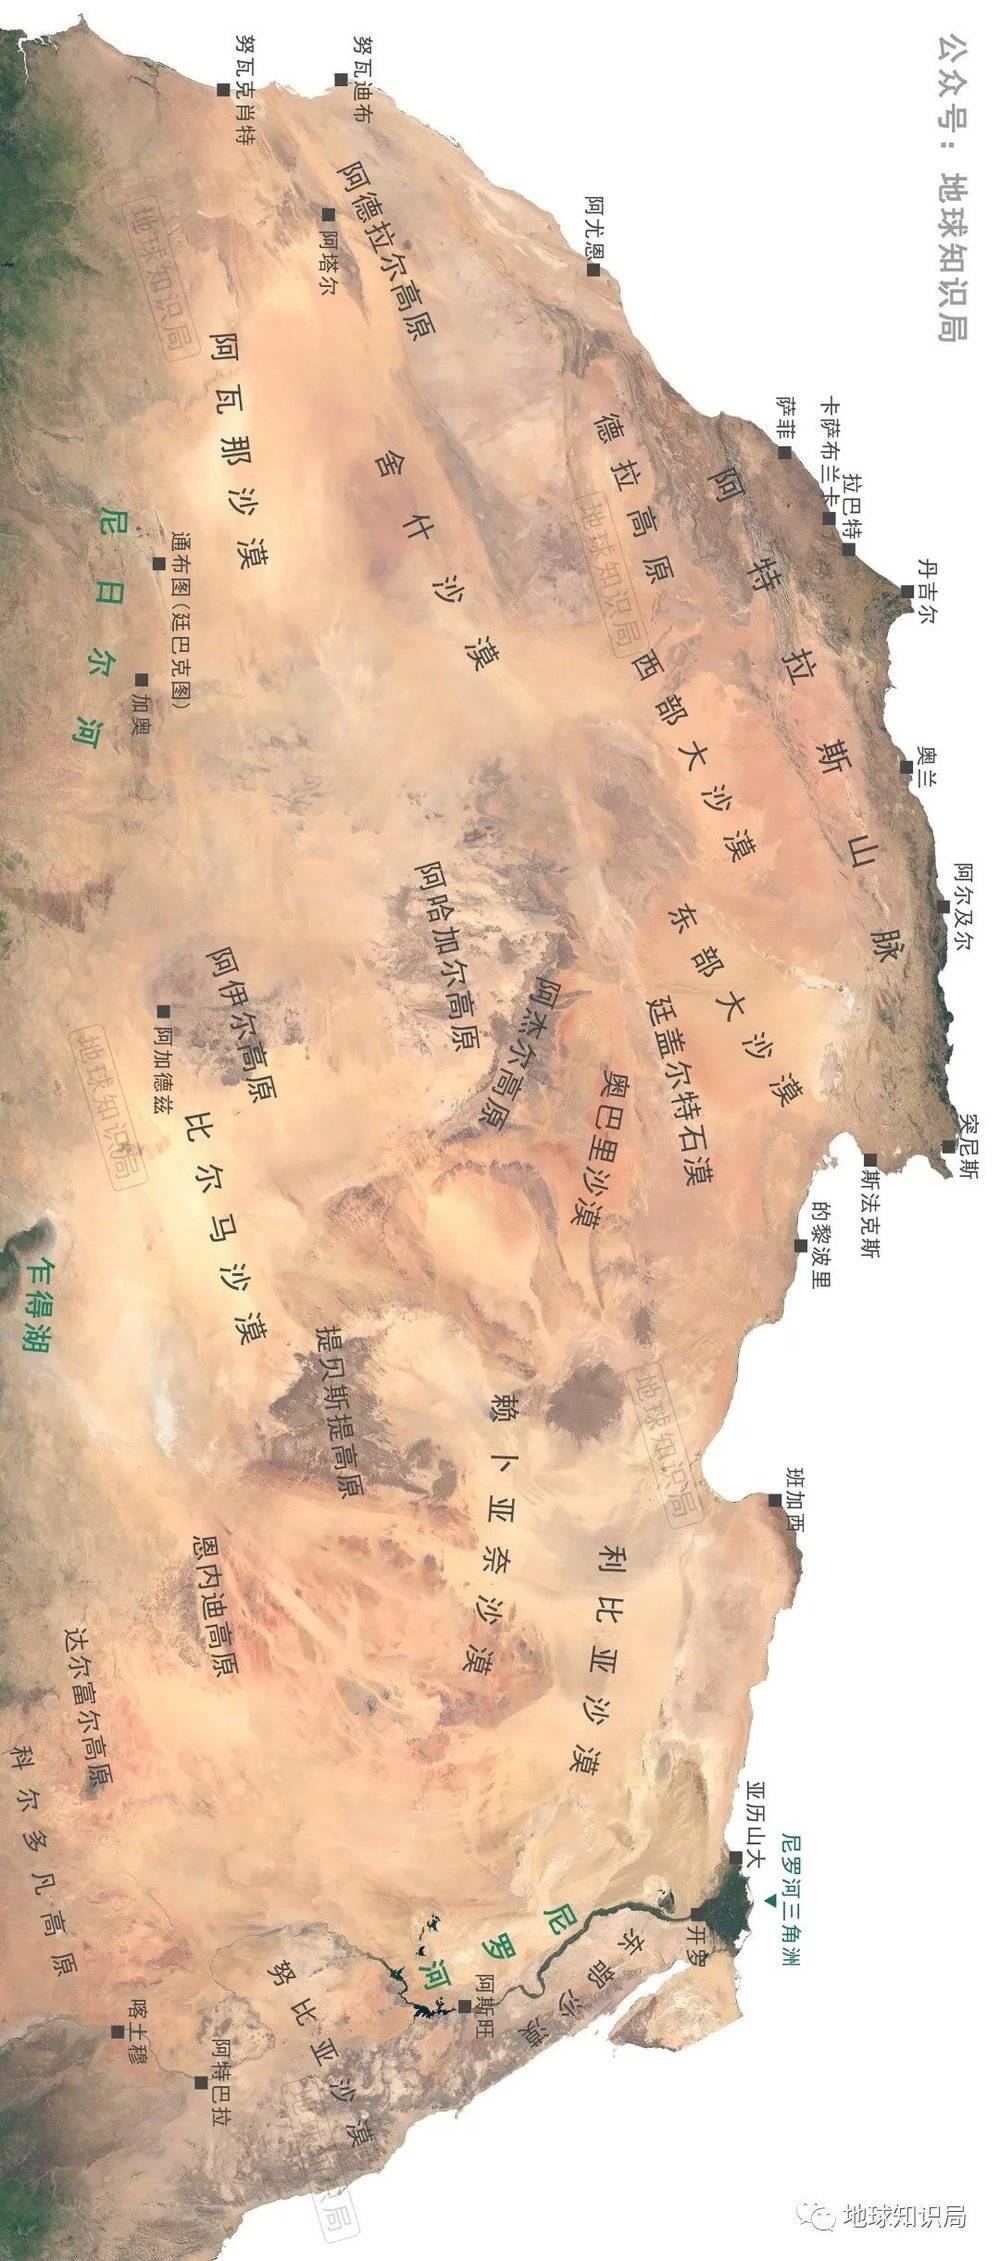 辽阔的撒哈拉沙漠相当于美国本土那么大，但其中真正粮食高产的地区只有小小的尼罗河三角洲，埃及要养活上亿人口，早已是粮食进口国了（横屏看图）